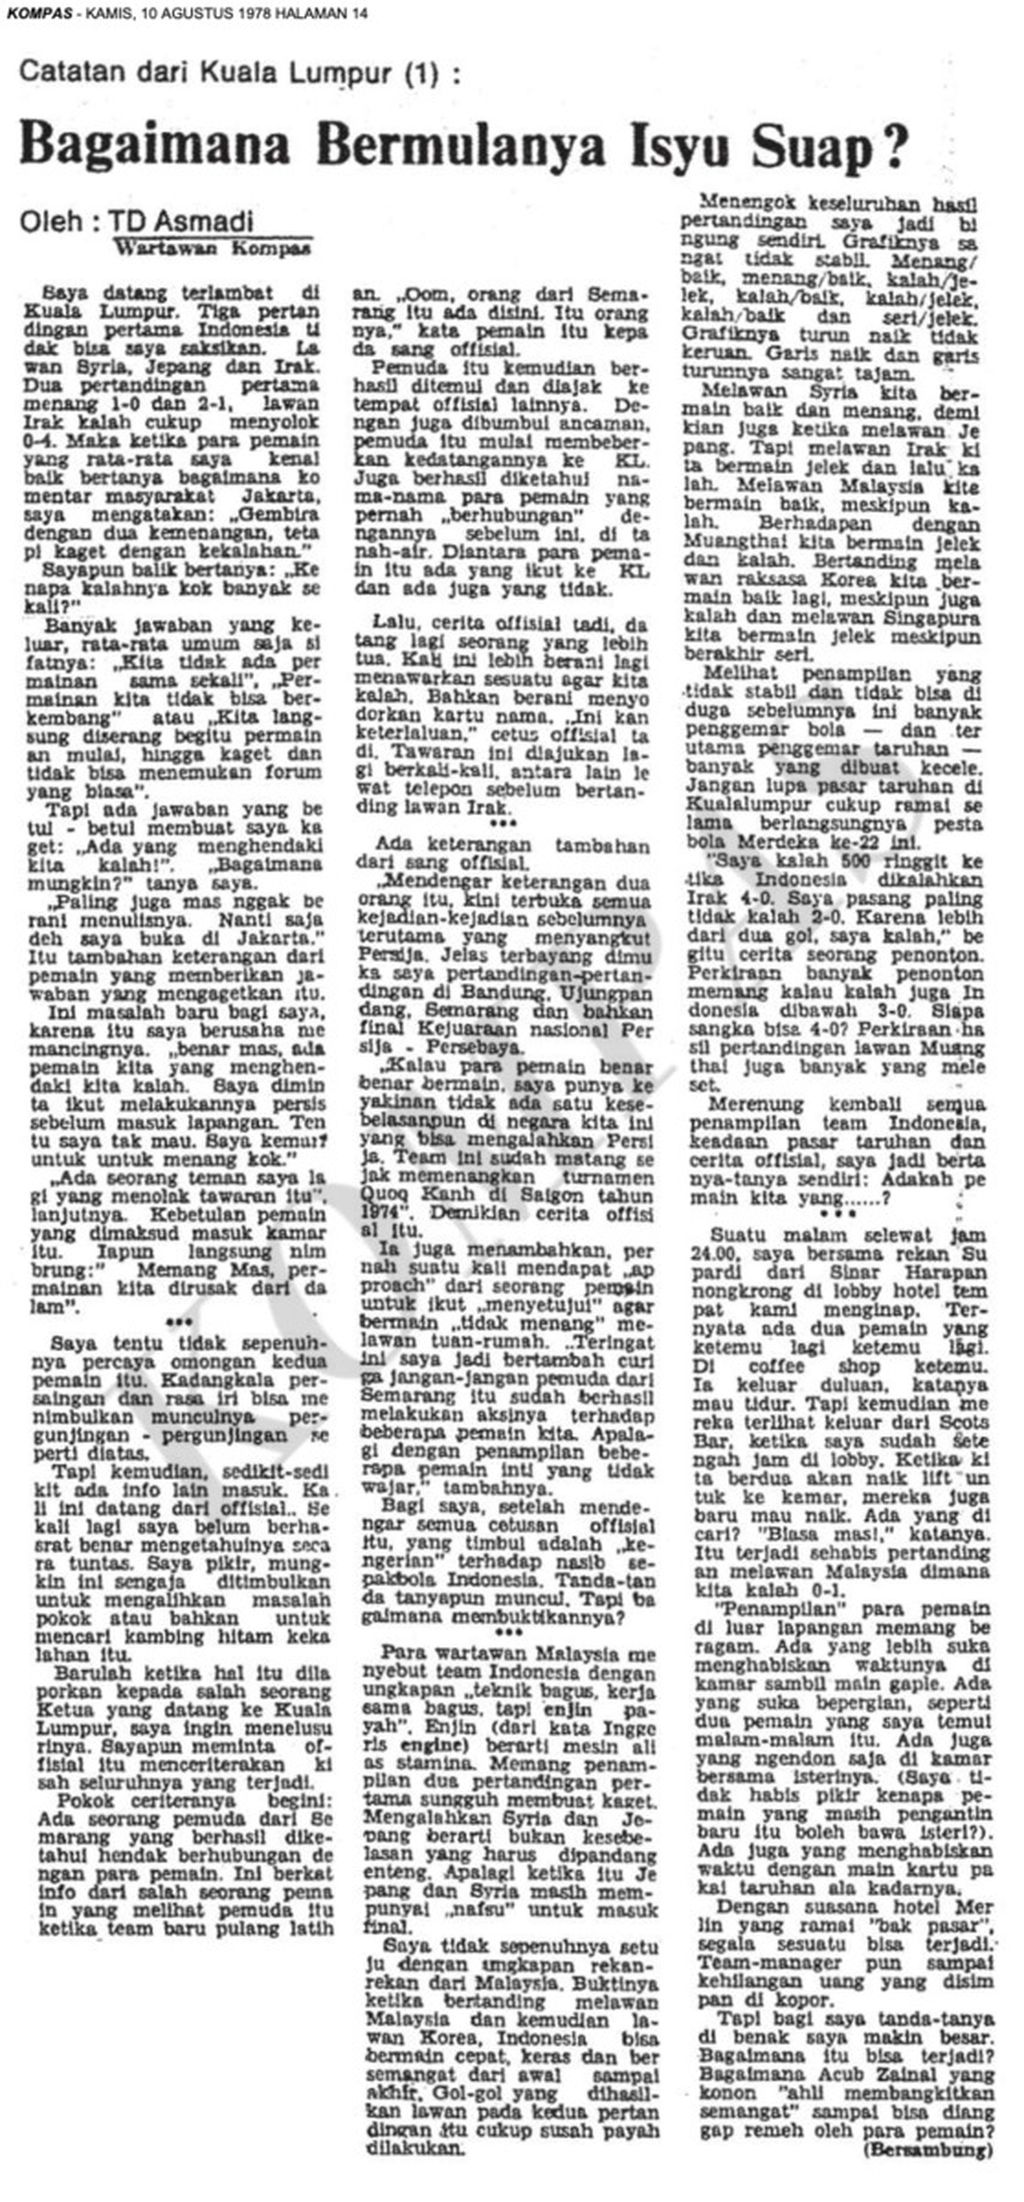 Berita <i>Kompas</i> tentang dugaan kasus suap yang mengemuka pada kekalahan Indonesia dari Irak di Merdeka Games 1978.